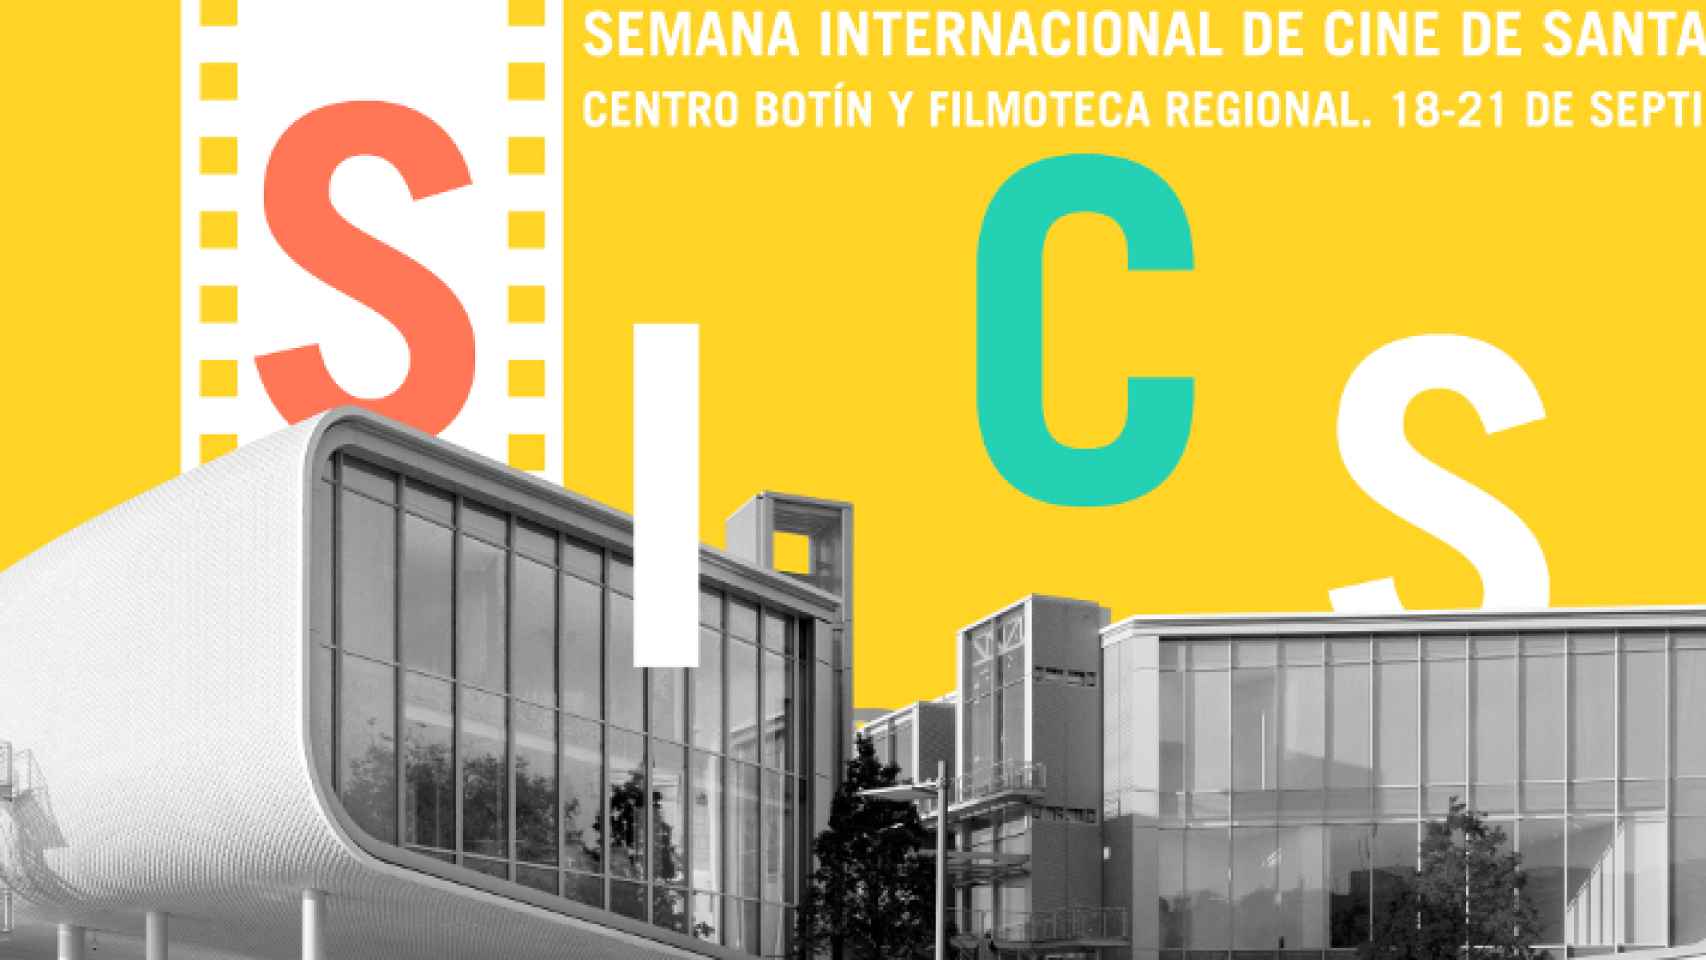 Semana Internacional de Cine en Santander.